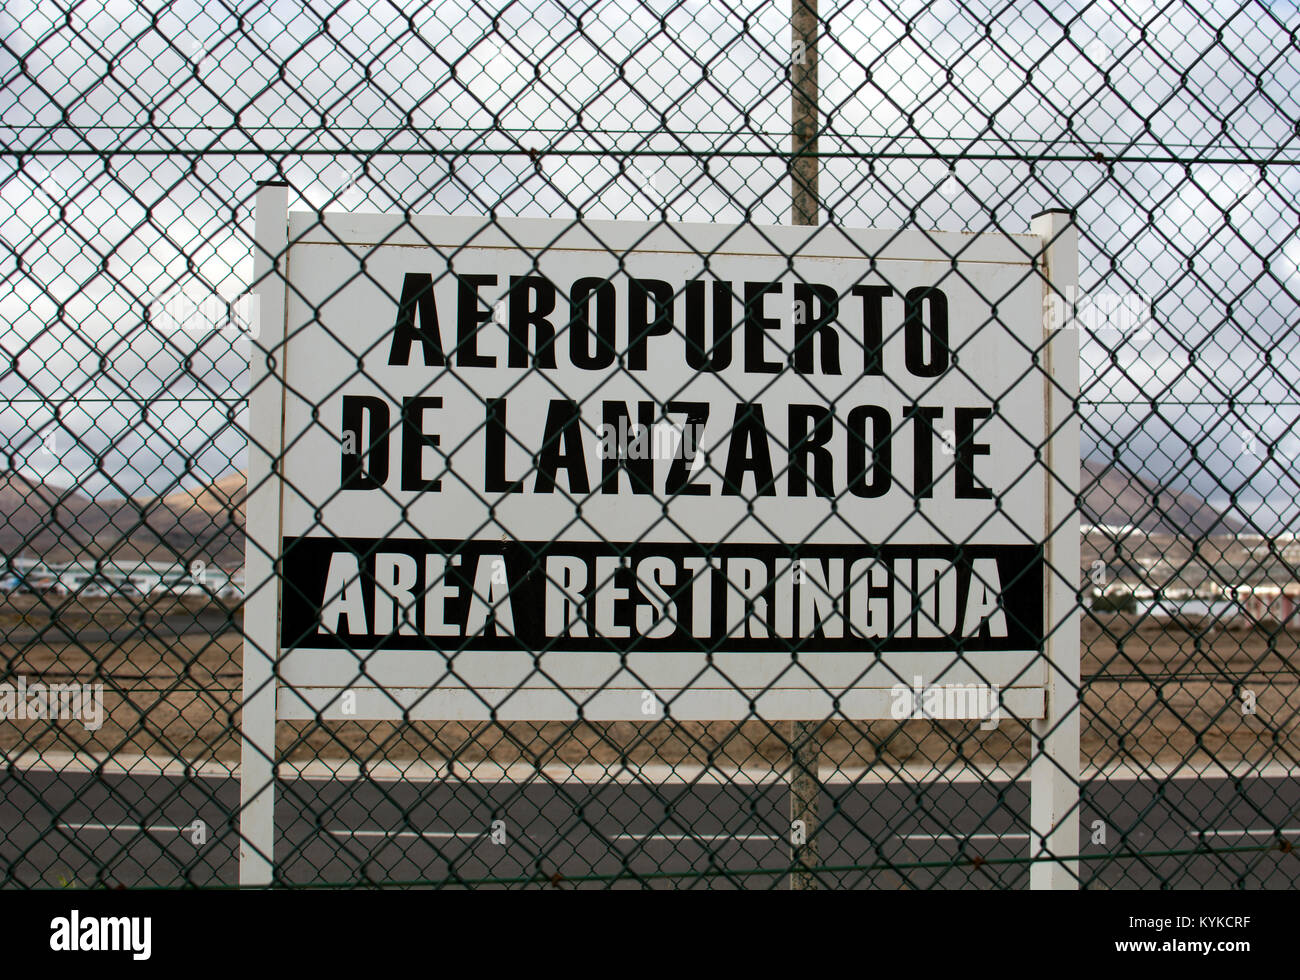 Zona restringida a firmar, al aeropuerto de Arrecife, Lanzarote, Islas Canarias, España. Foto de stock